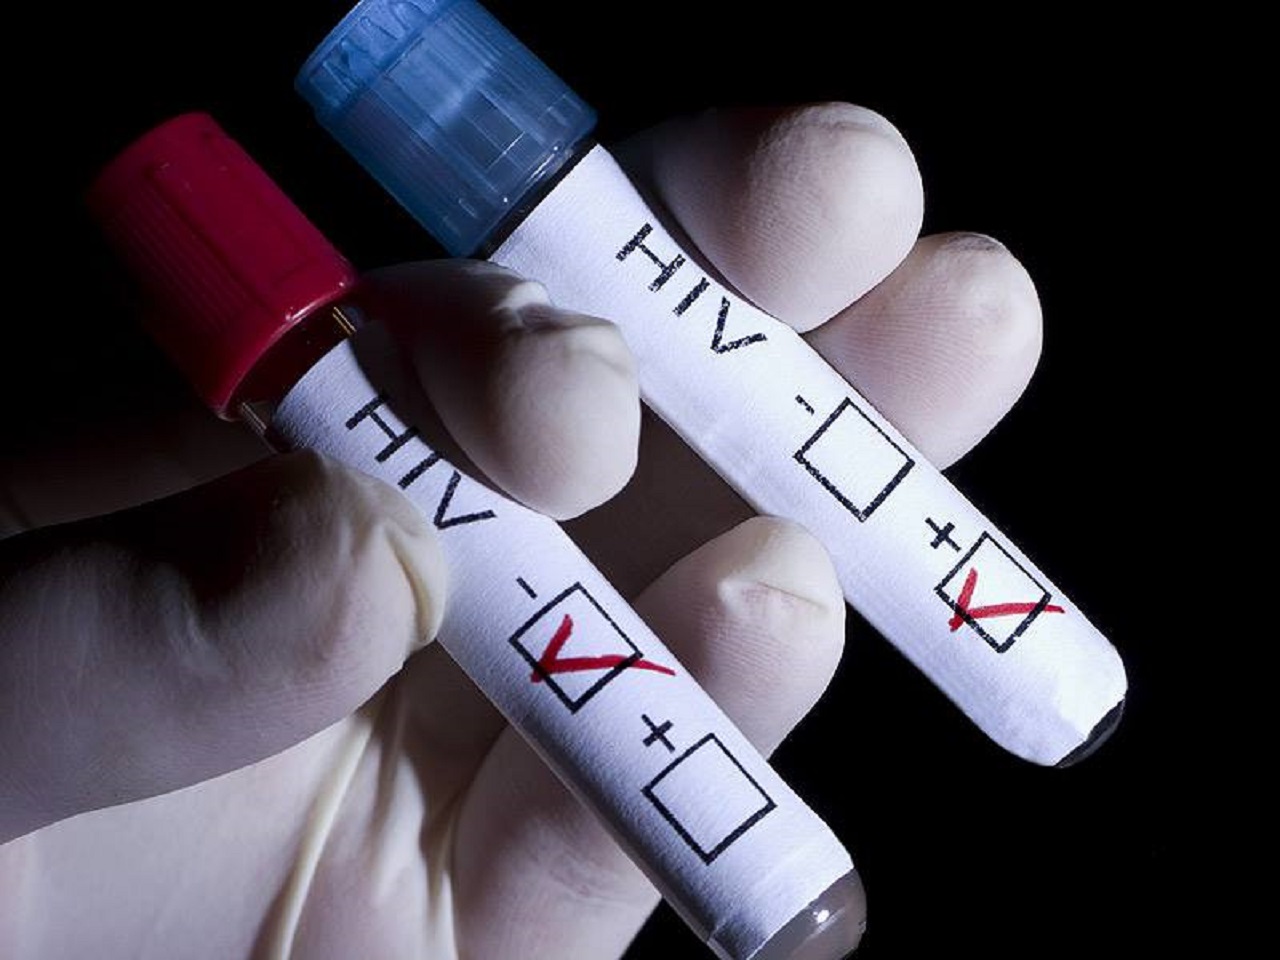 Na HIV, HVB či HVC sa možno otestovať na viacerých miestach